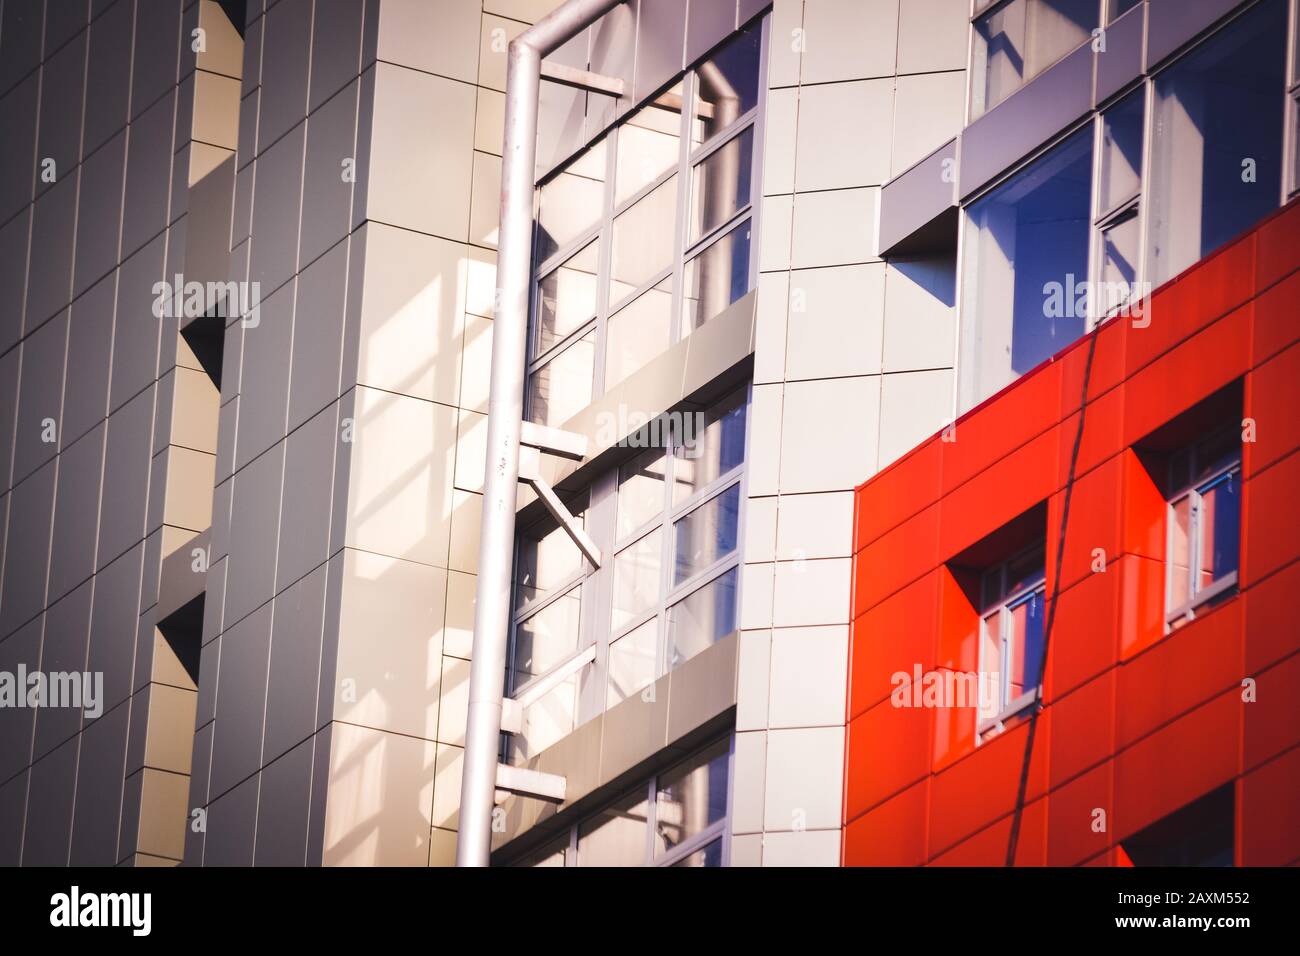 façade, devant la maison rouge et gris dans le style high-tech différents détails sur une journée ensoleillée Banque D'Images